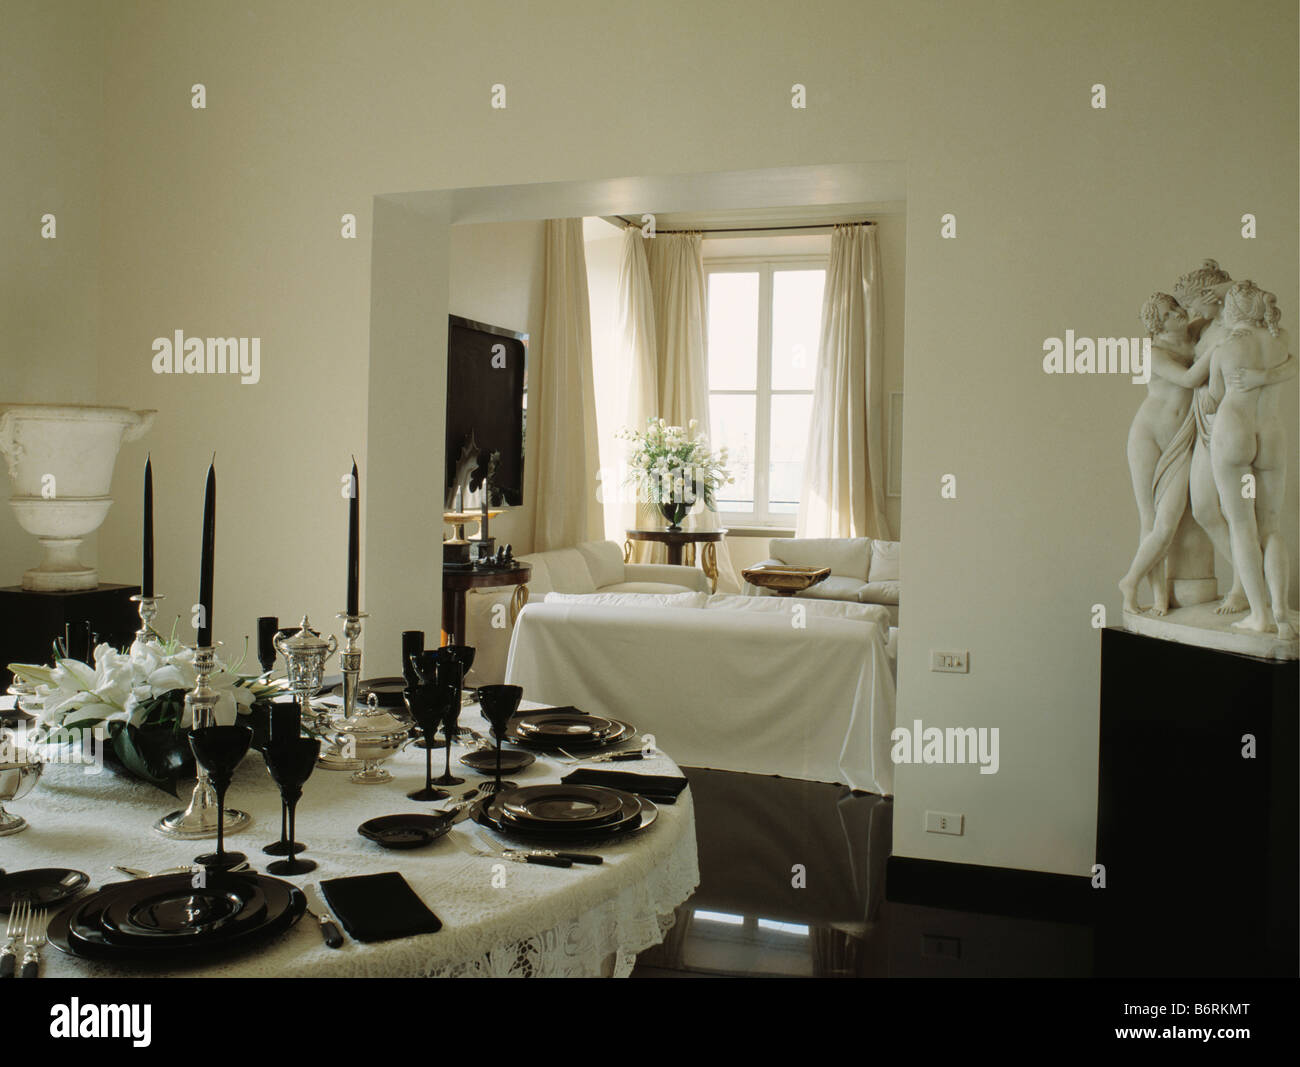 Vasellame nero e candele sulla tavola circolare con un panno bianco in tutto bianco sala da pranzo con statua classica in un angolo della stanza Foto Stock